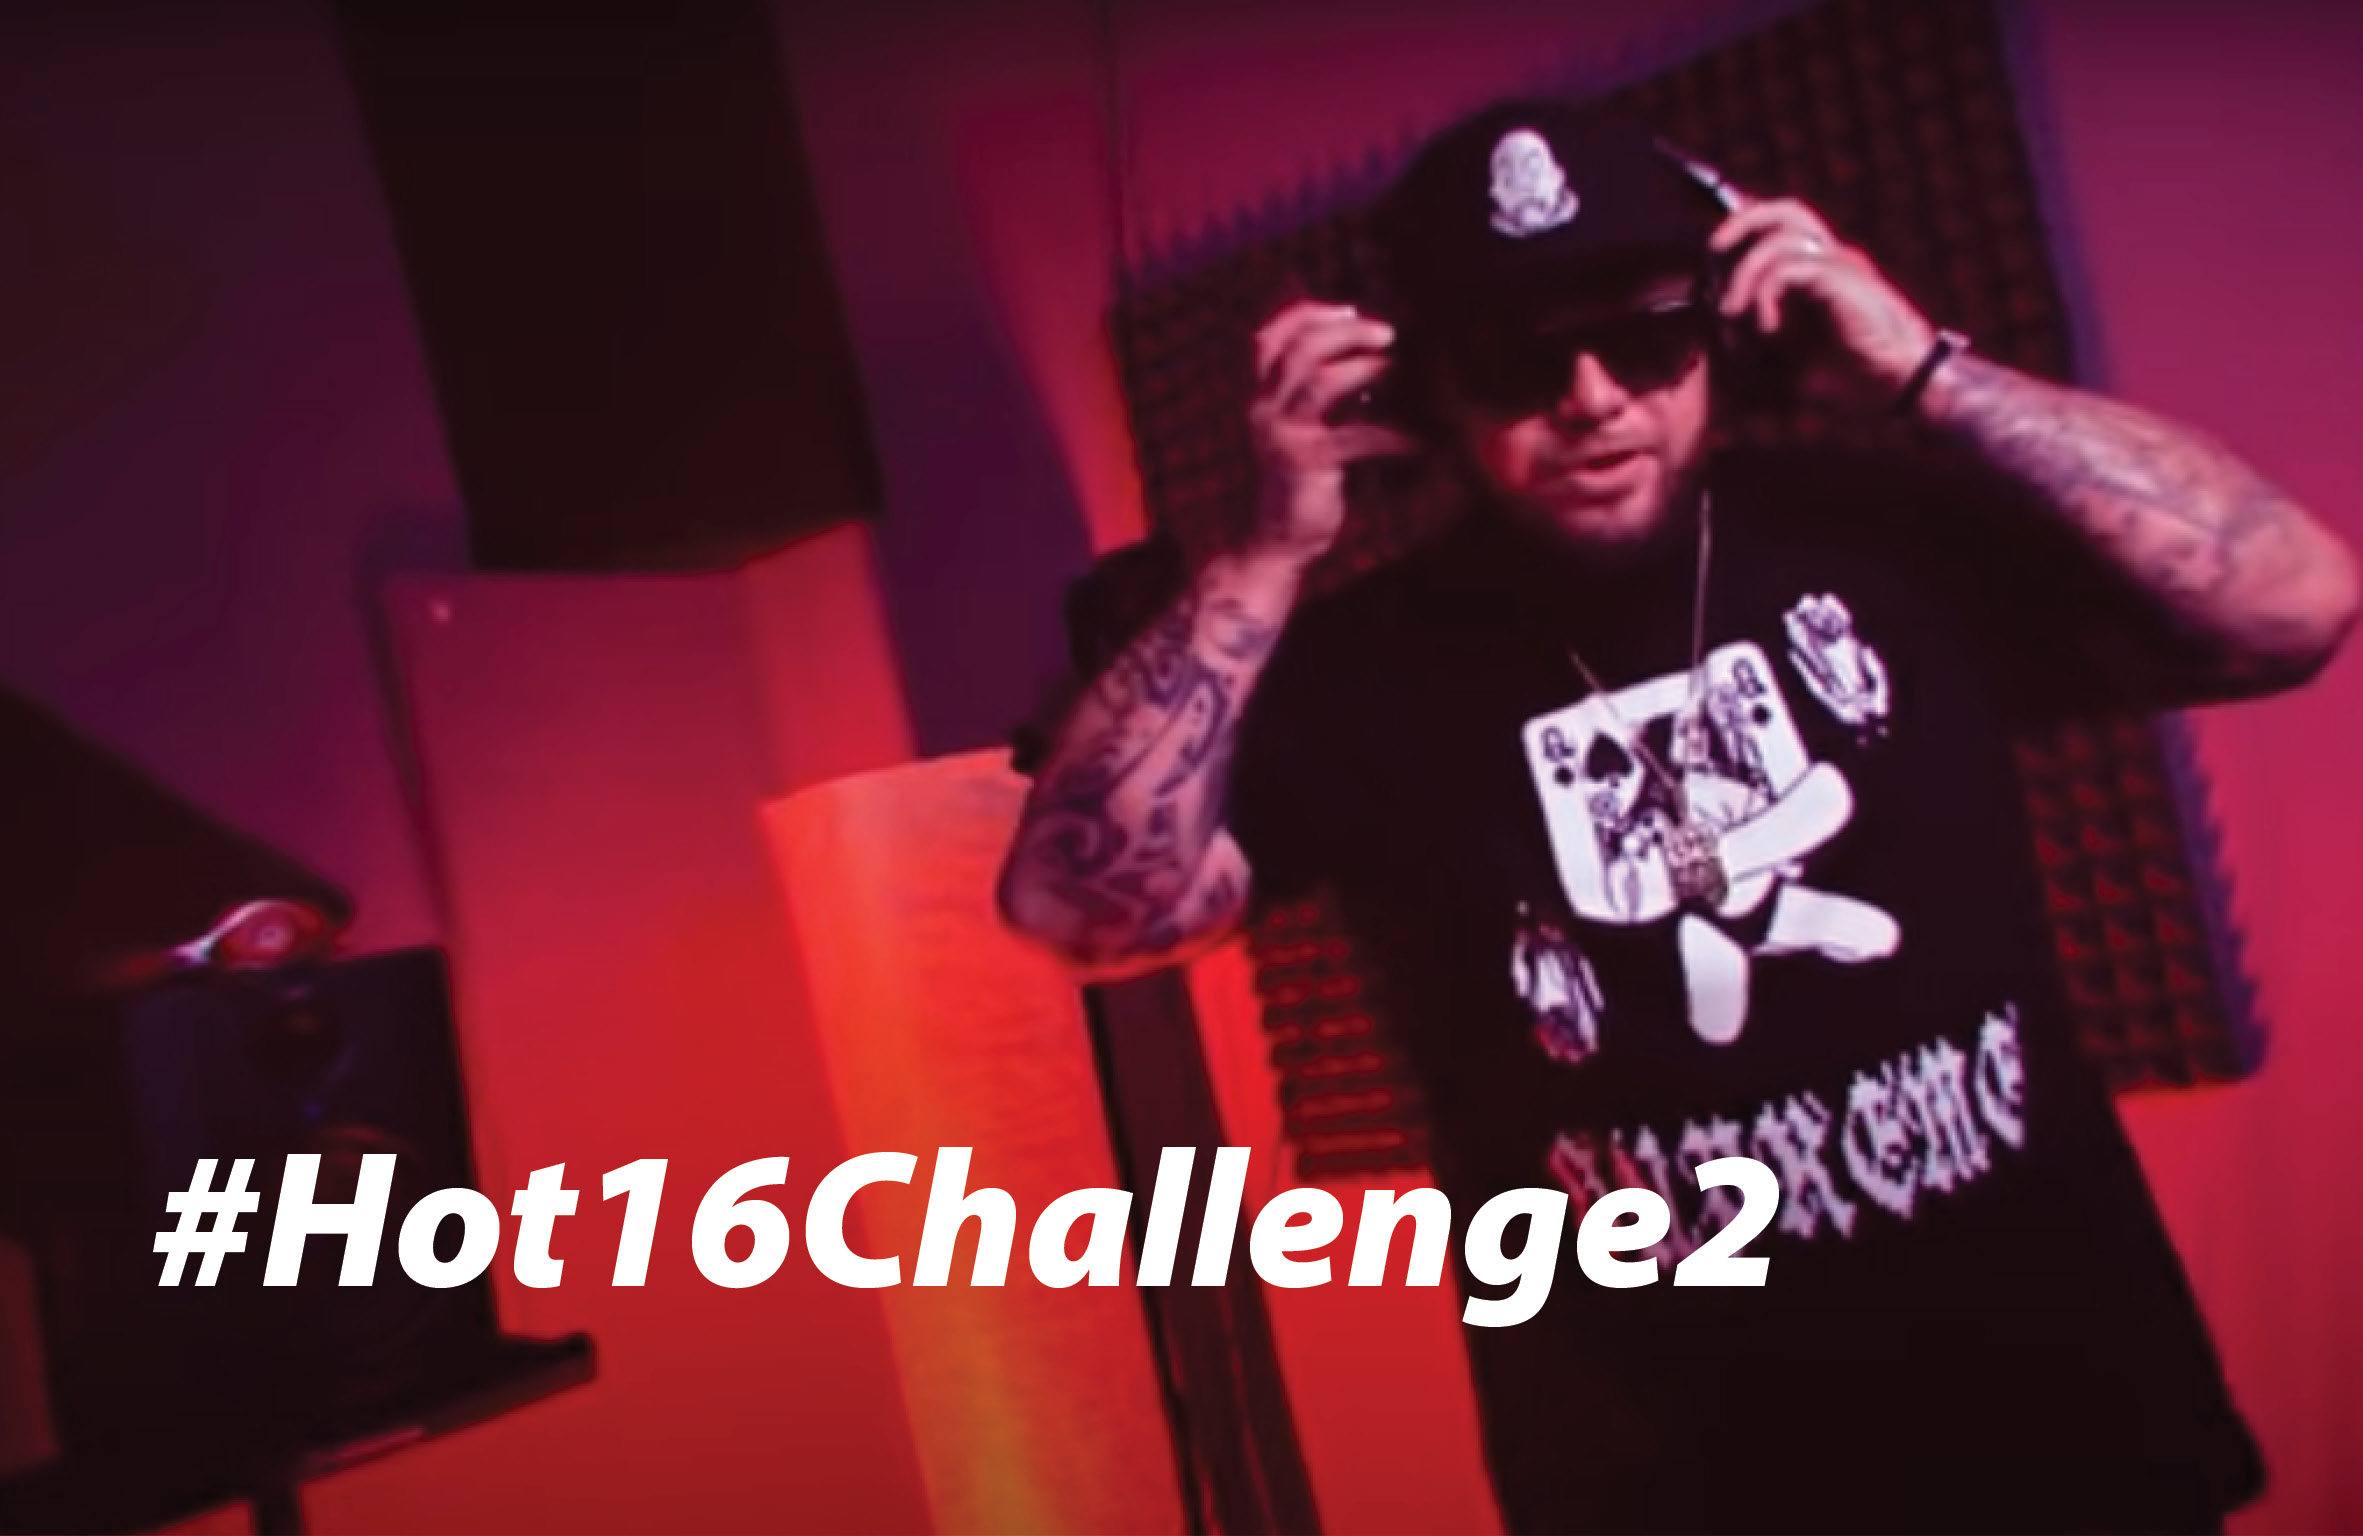 #Hot16Challenge2 valcuje slovenský internet a sním aj hip-hop scénu!? Nerieš a Dano Kapitán priniesli plnohodnotnú skladbu!?